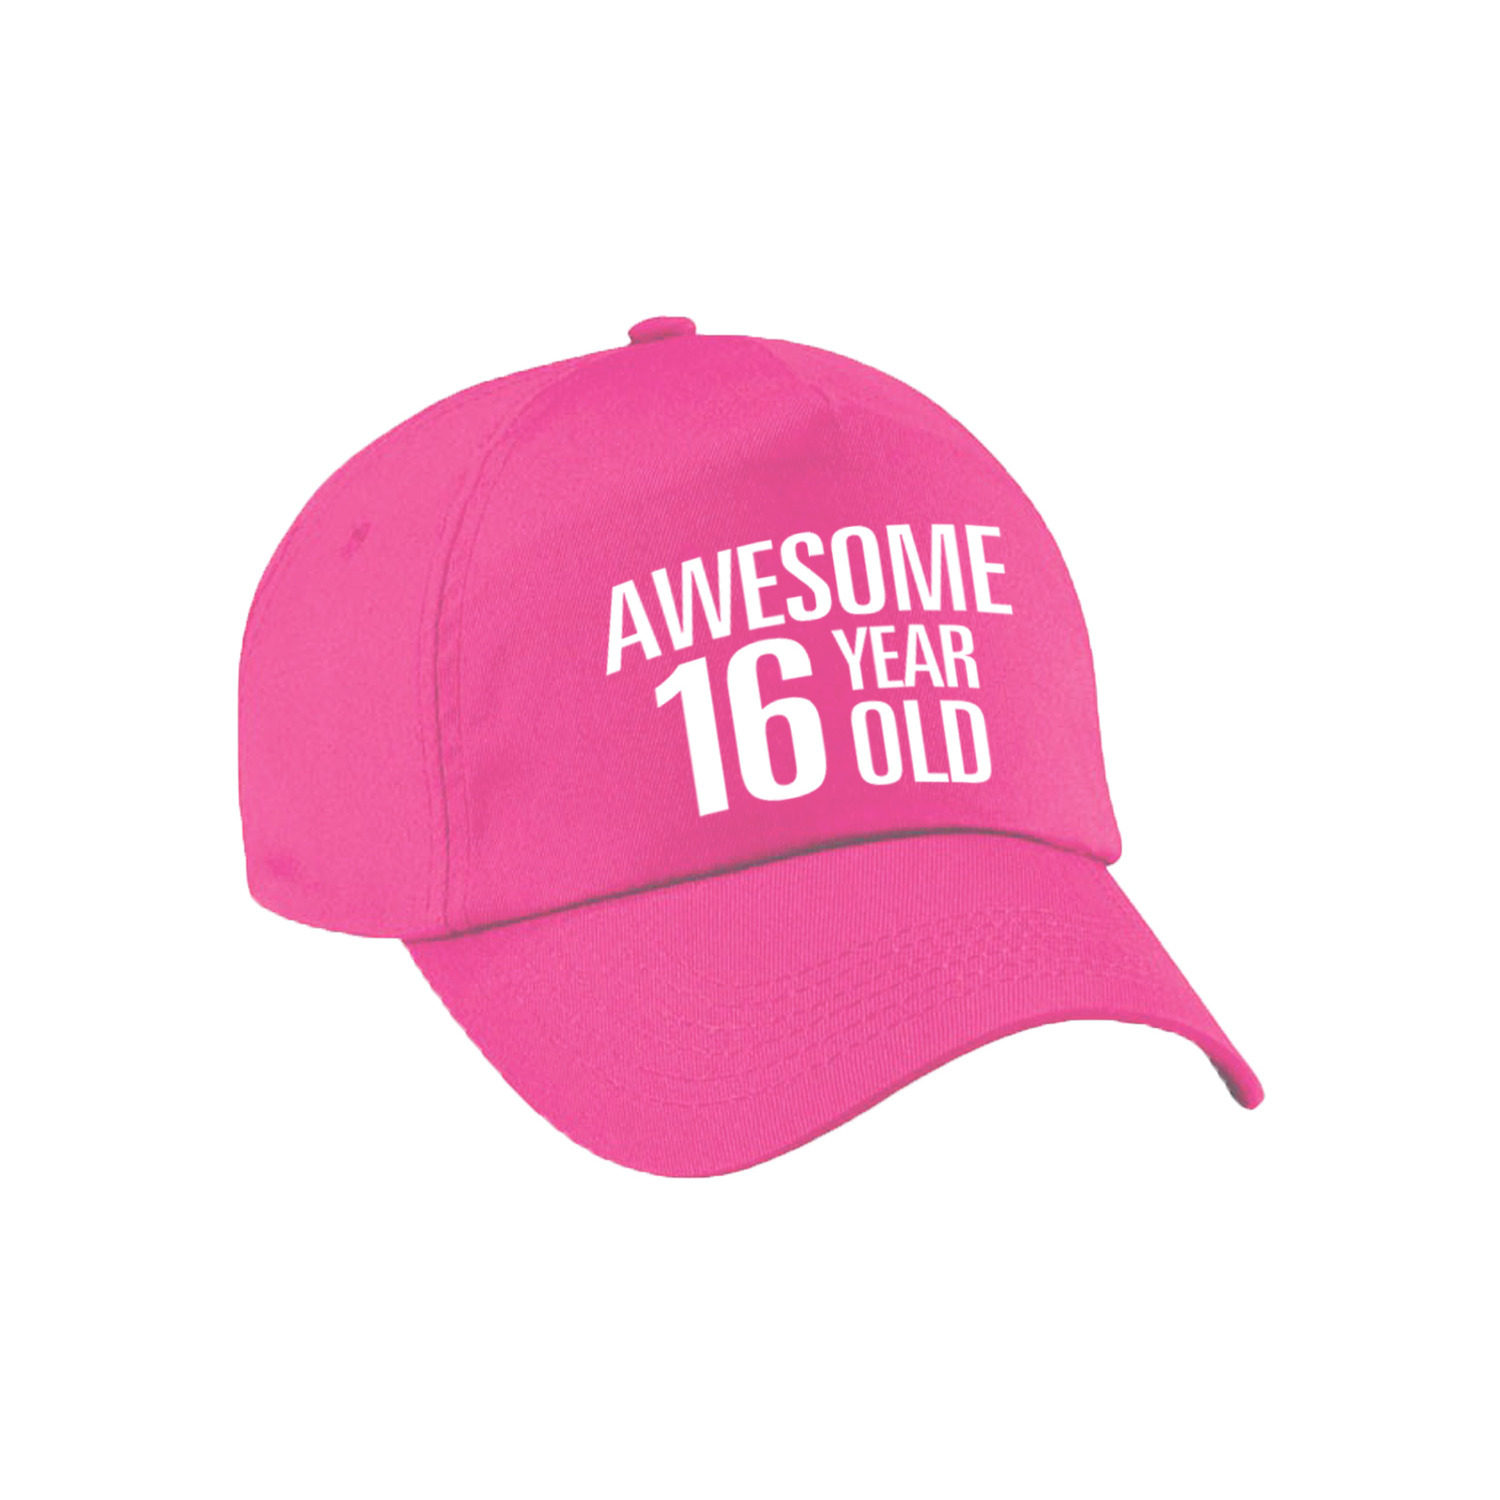 Awesome 16 year old verjaardag pet / cap roze voor dames en heren